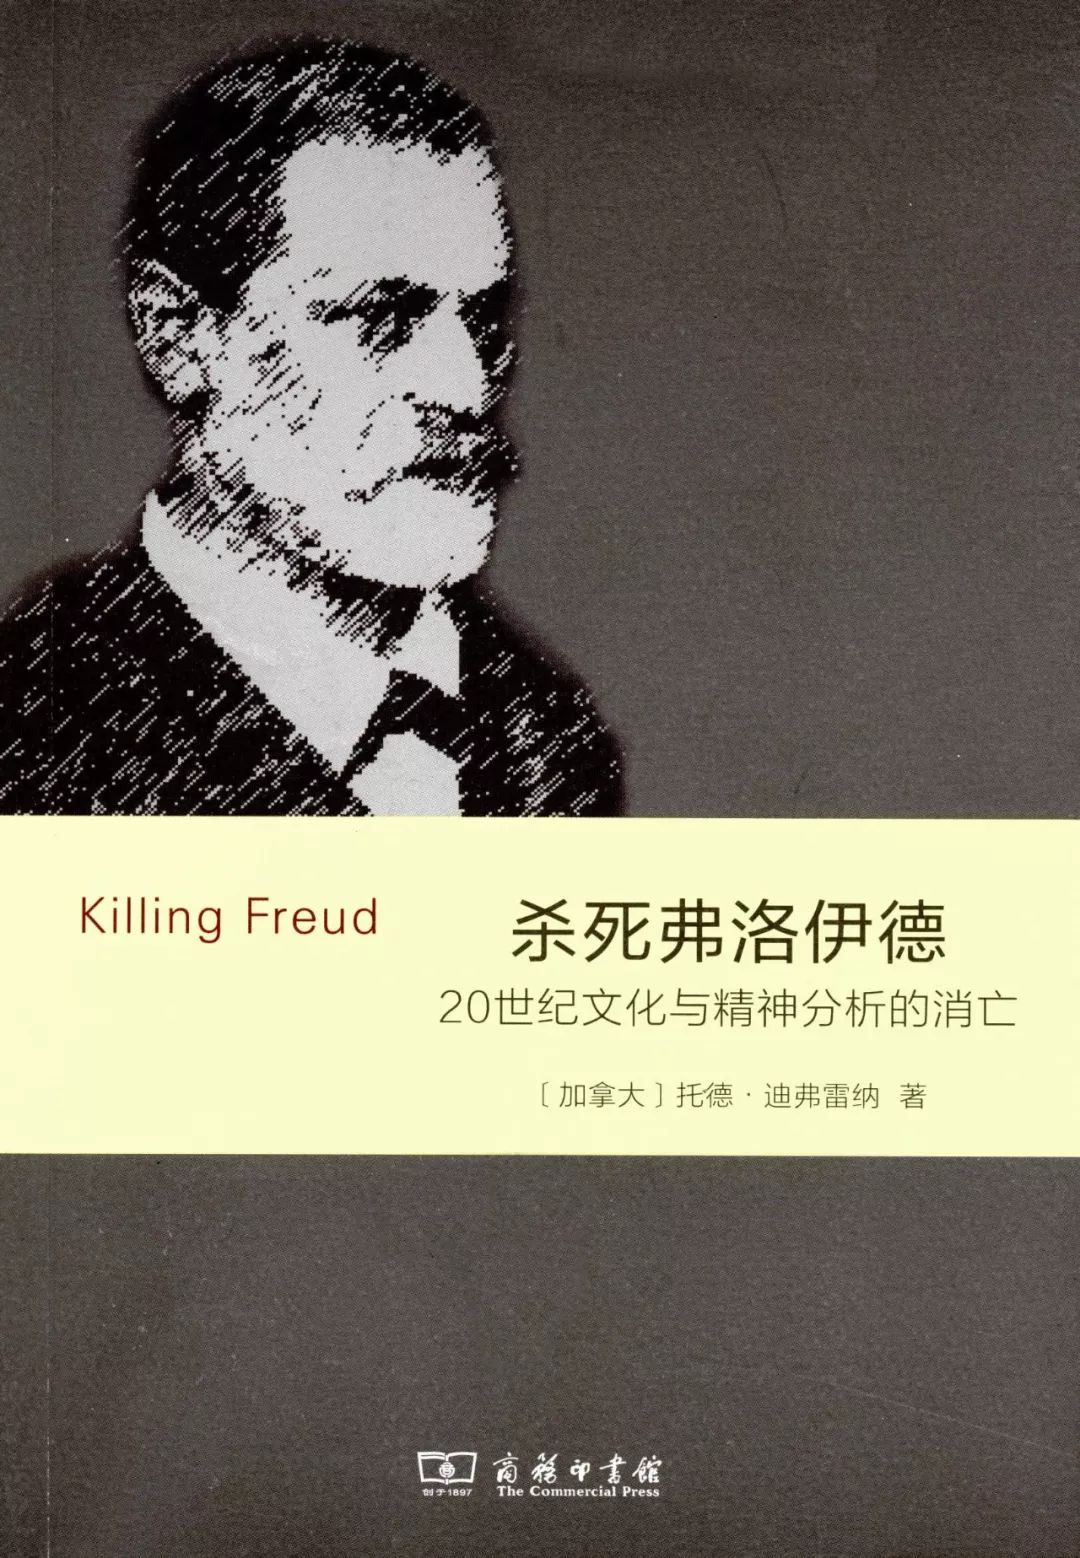 历史上的今天9月23日_1939年弗洛伊德逝世。弗洛伊德，奥地利精神病学家、心理学家、精神分析学派的创始人（生于1856年）